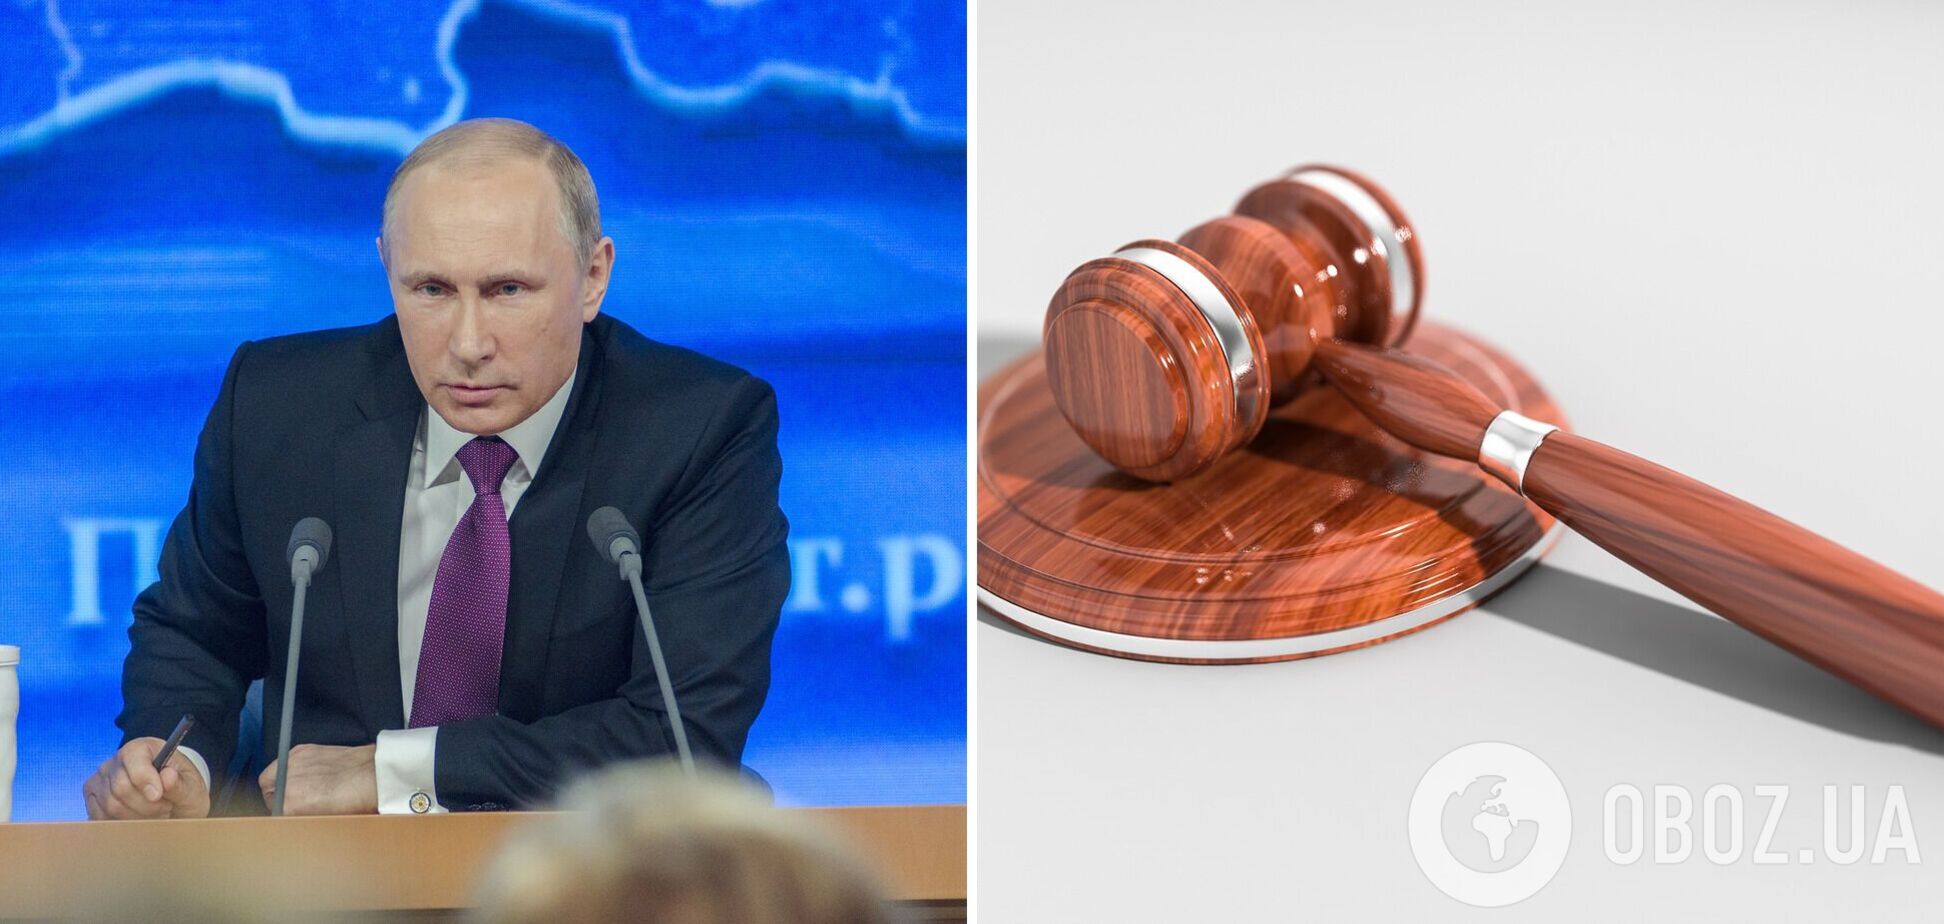 Путина могут поймать в любой точке мира: экс-судья в Гааге рассказал, как работает секретный ордер на арест